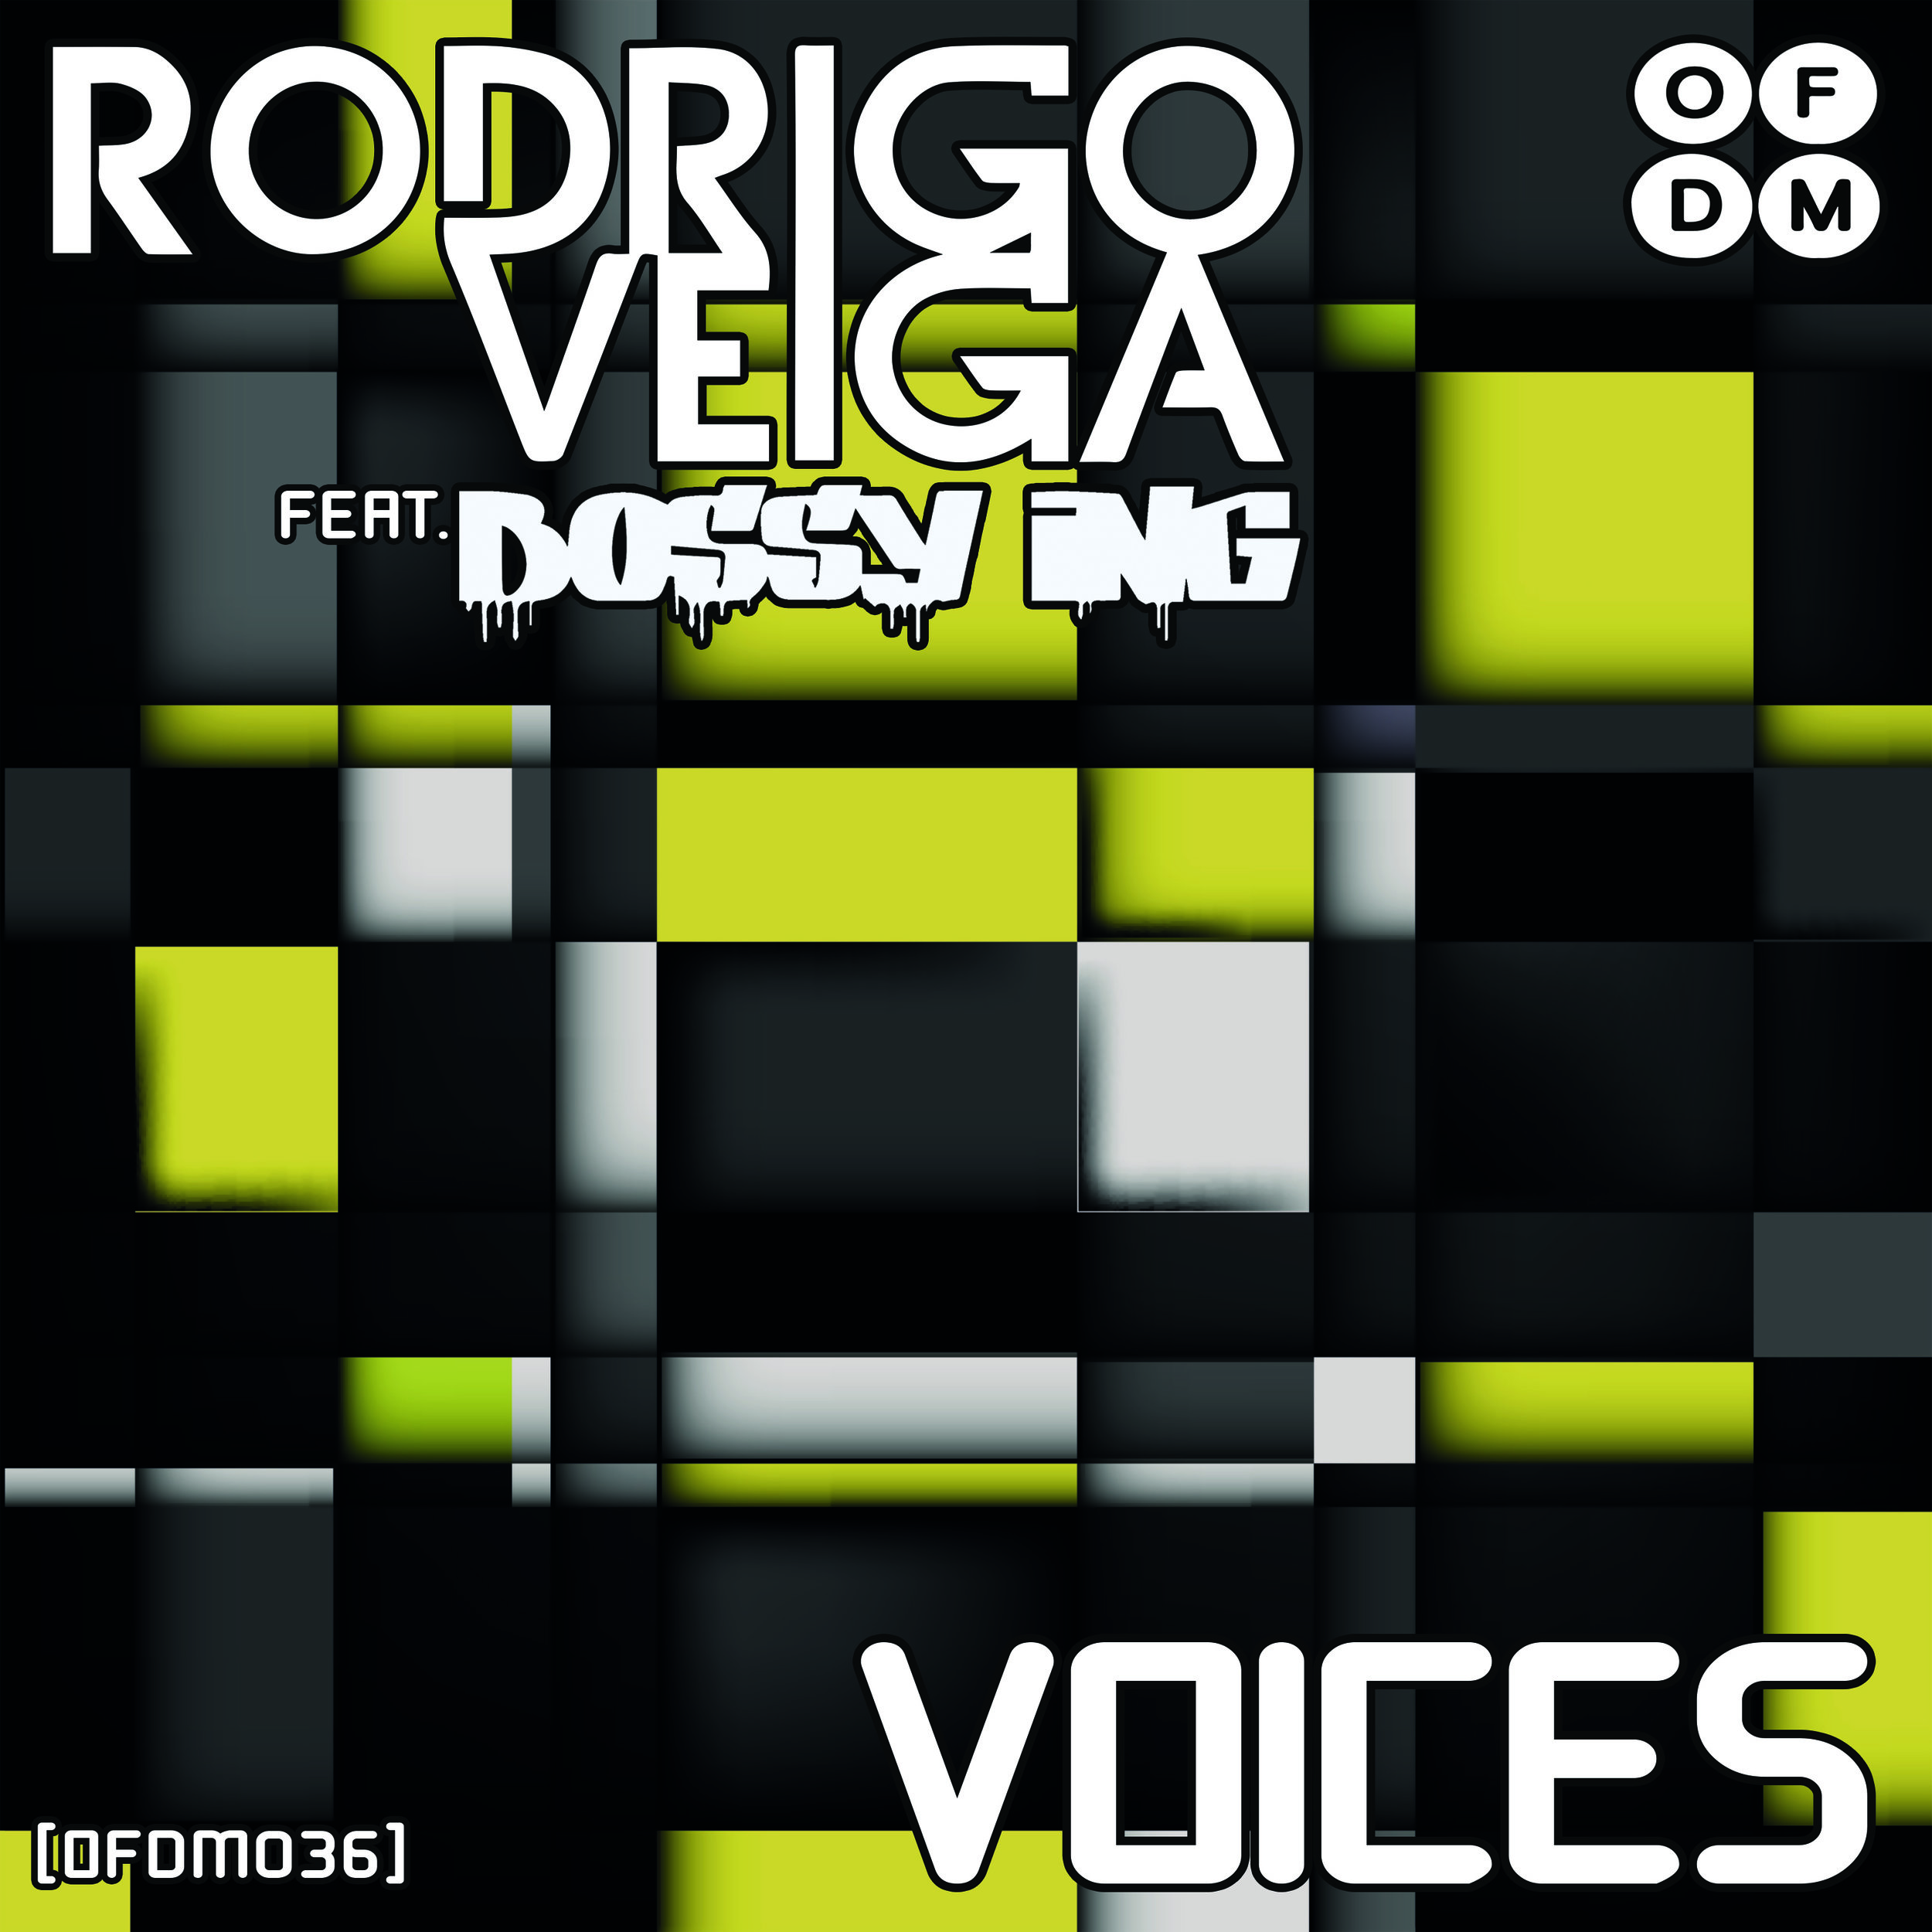 [OFDM036] Rodrigo Veiga - Voices EP (ARTWORK).jpg